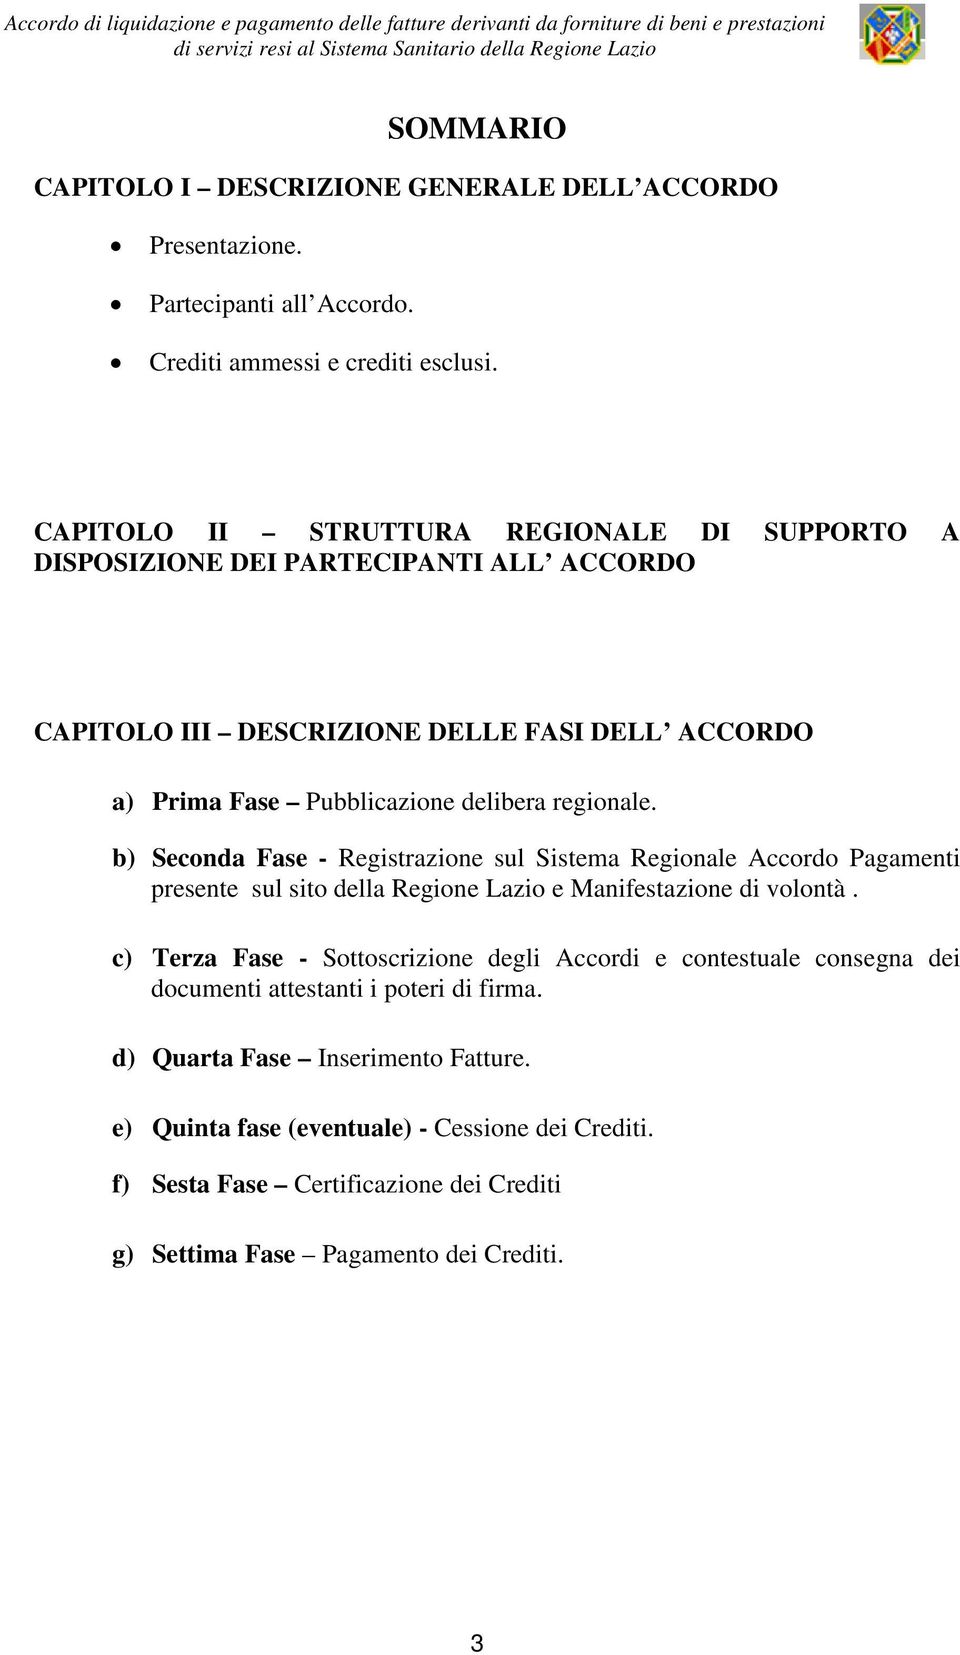 b) Seconda Fase - Registrazione sul Sistema Regionale Accordo Pagamenti presente sul sito della Regione Lazio e Manifestazione di volontà.